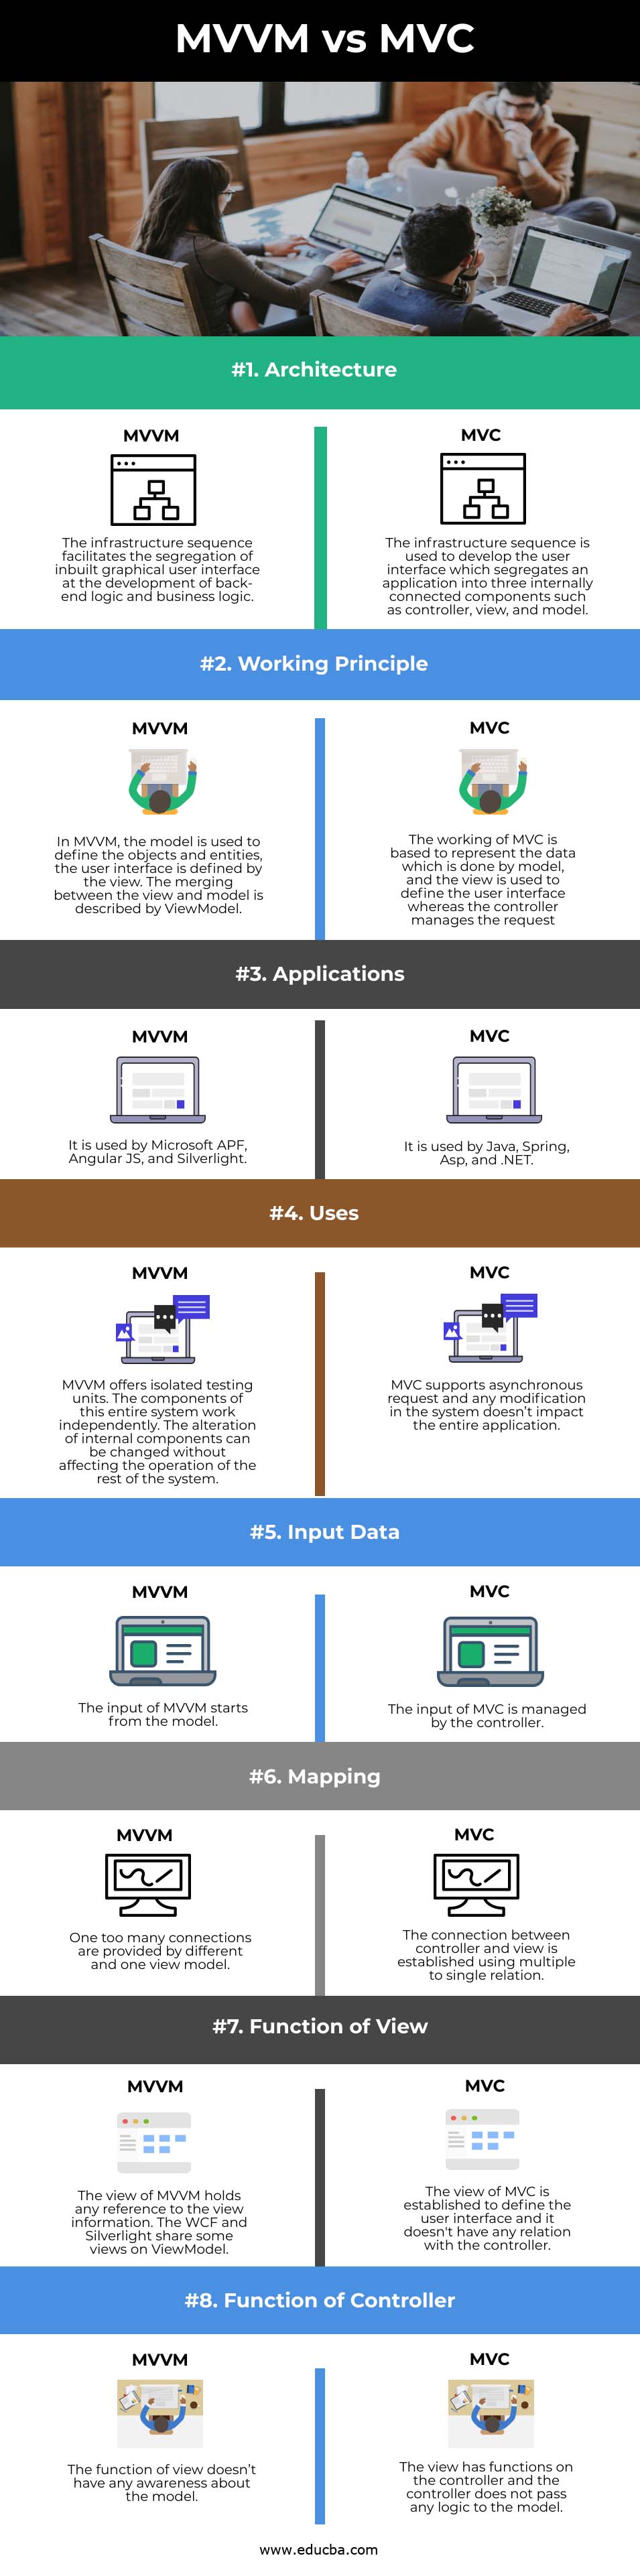 MVVM vs MVC info